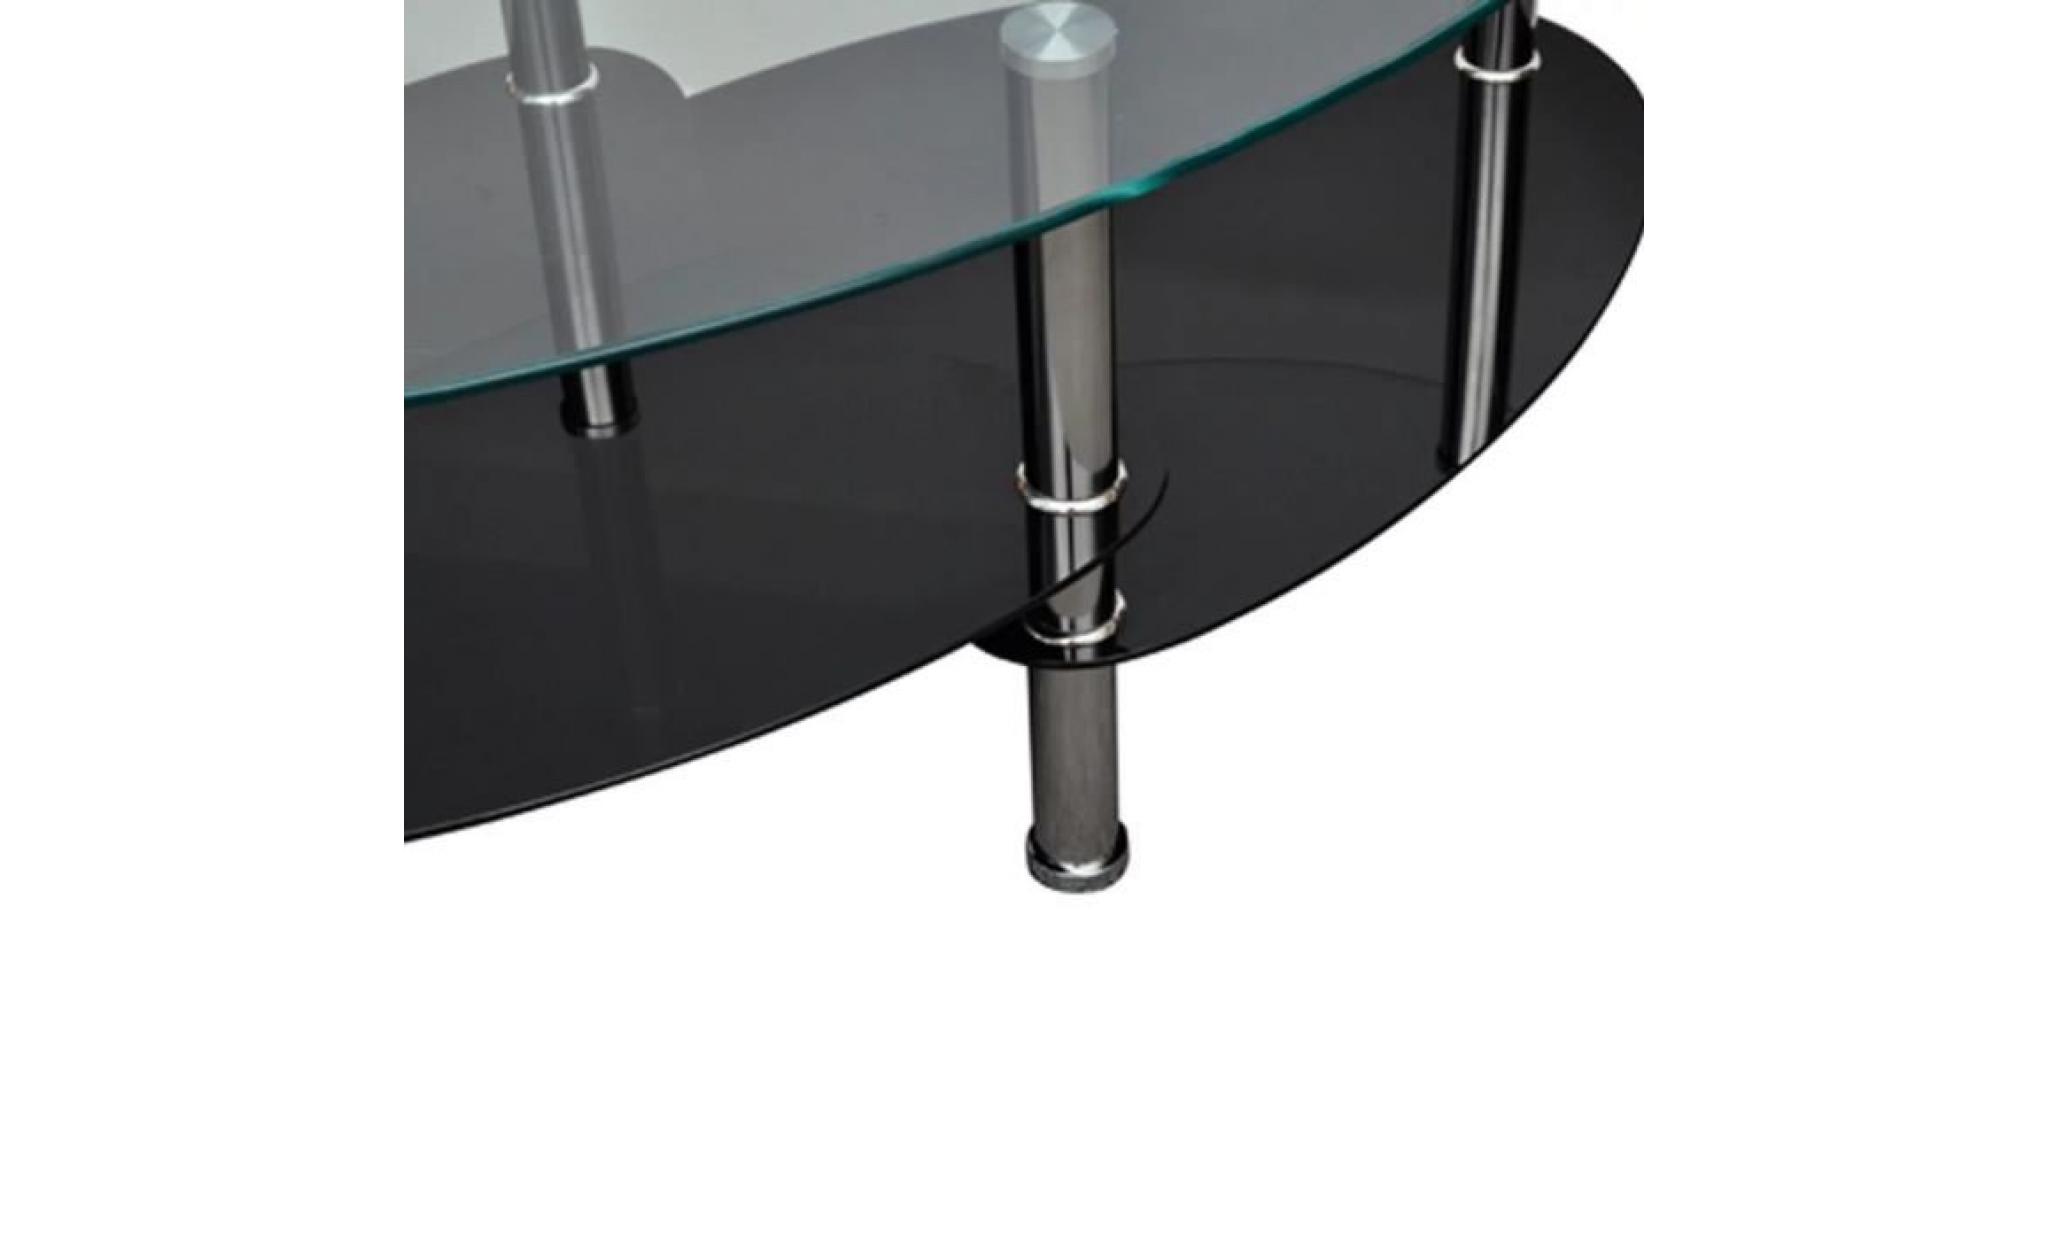 table basse ronde avec design exclusif noir table basse scandinave table console pas cher